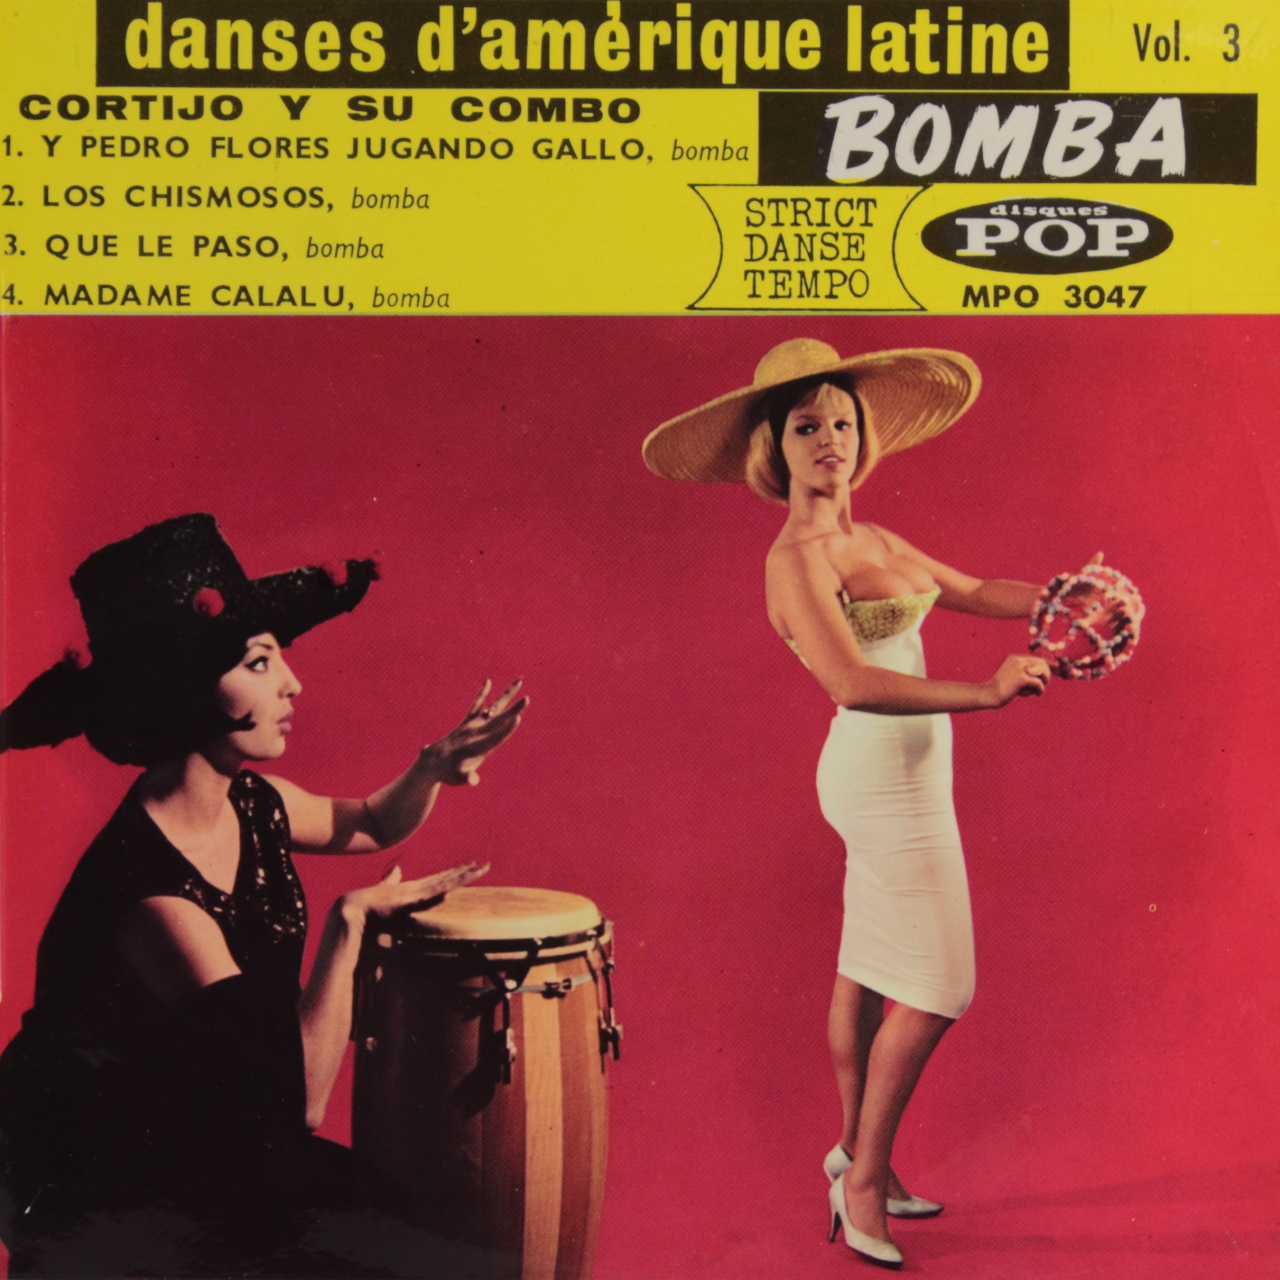 Danses dAmérique Latine Vol. 3: Bomba